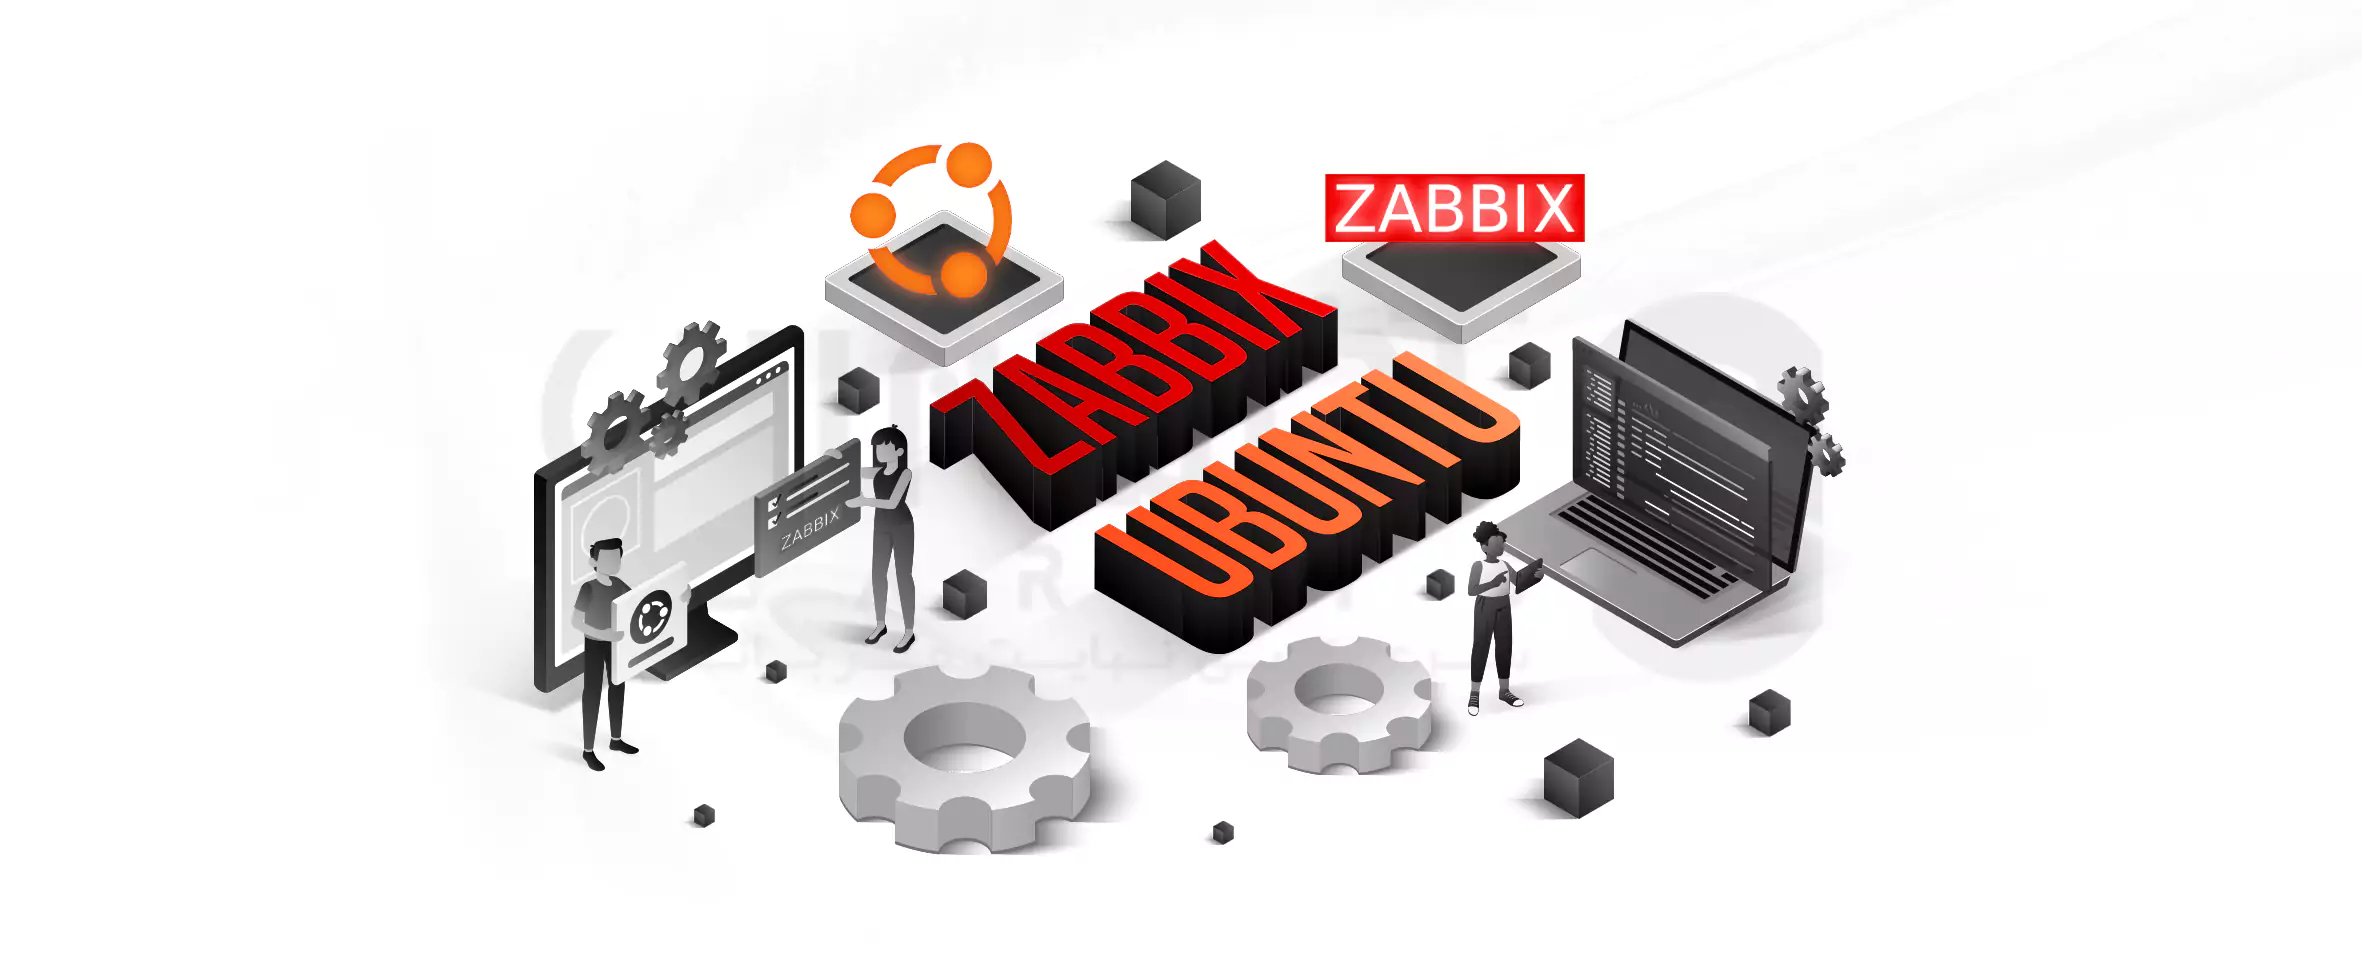 How 0to install Zabbix on Ubuntu